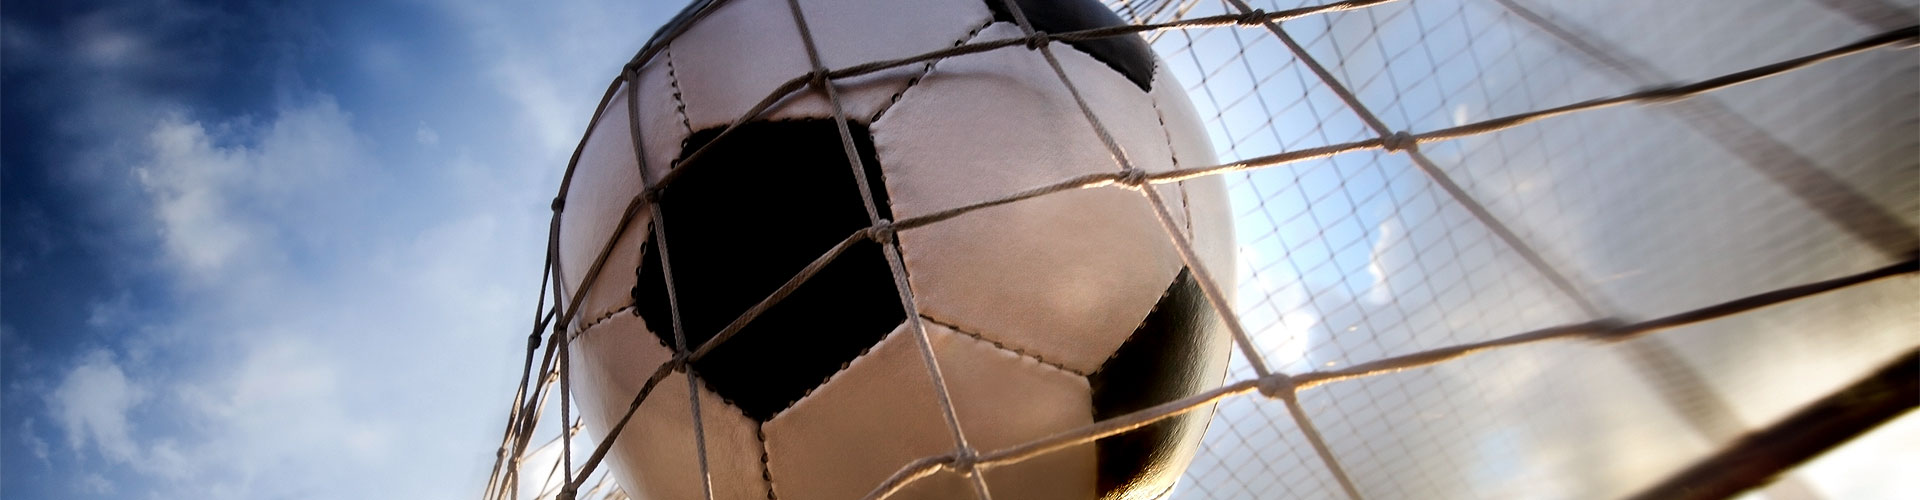 Ver la Eurocopa 2020 de fútbol en vivo en Fuenlabrada